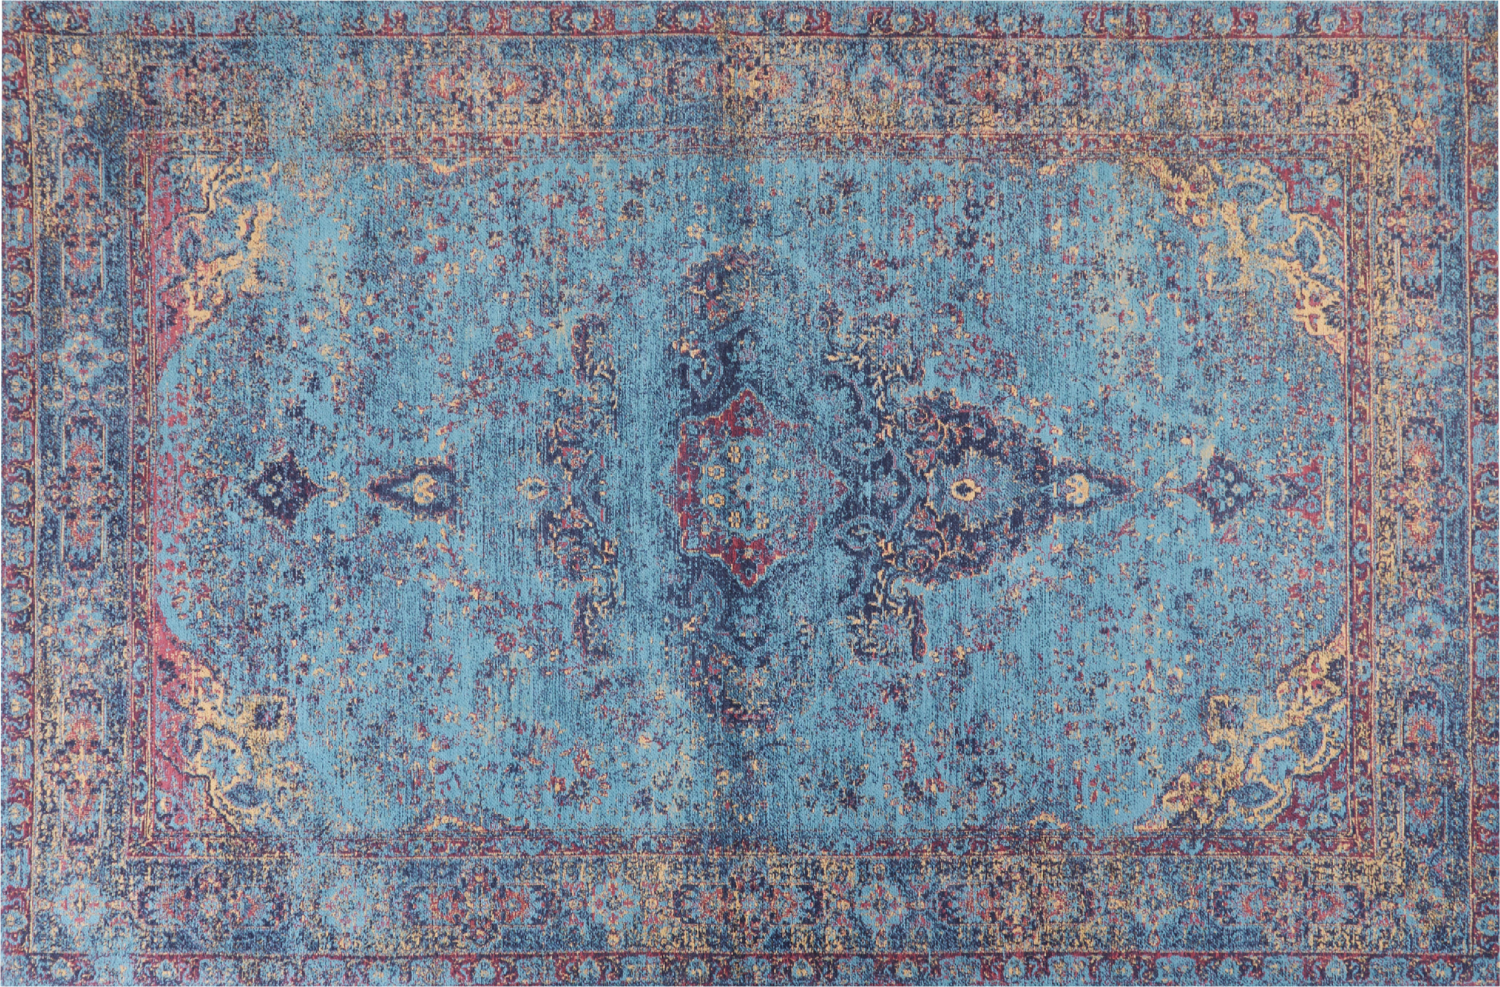 Teppich Baumwolle blau 200 x 300 cm orientalisches Muster Kurzflor KANSU Bild 1